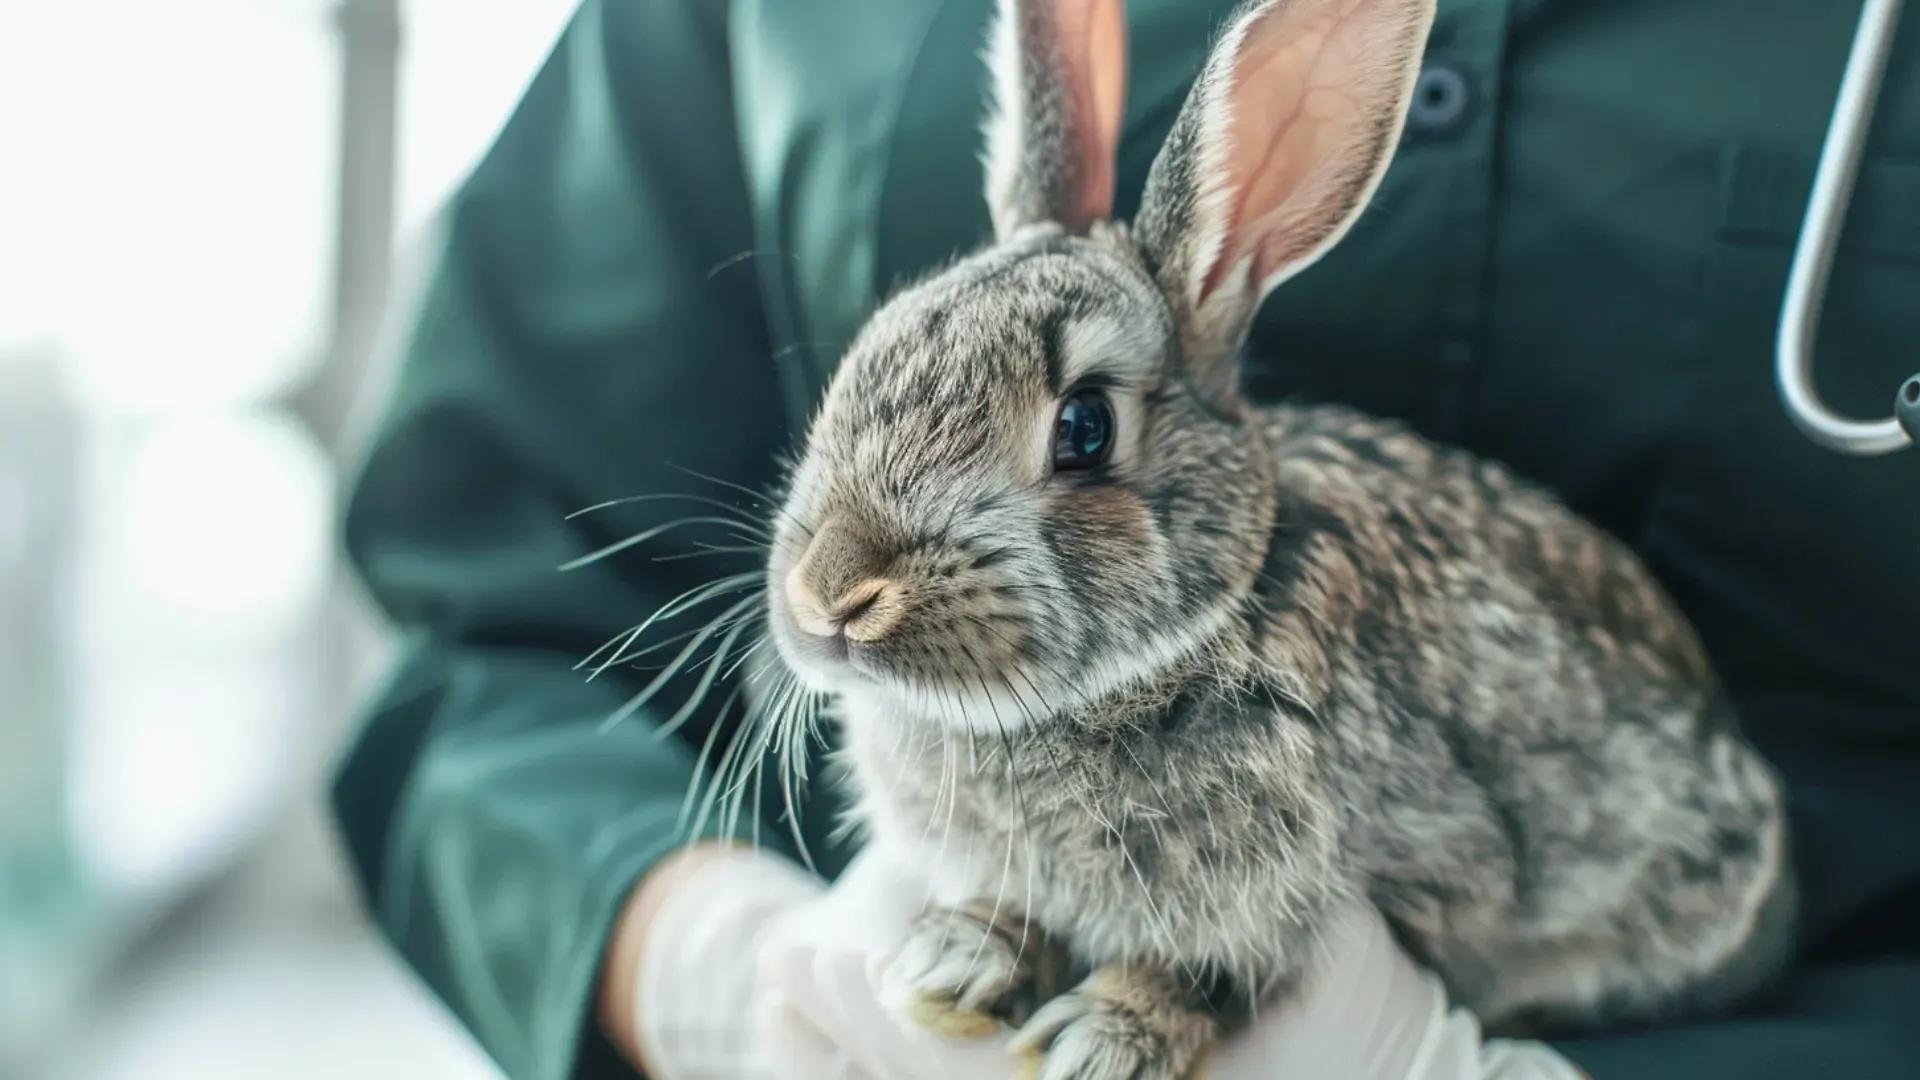 La vaccination du lapin : nos conseils vétérinaires